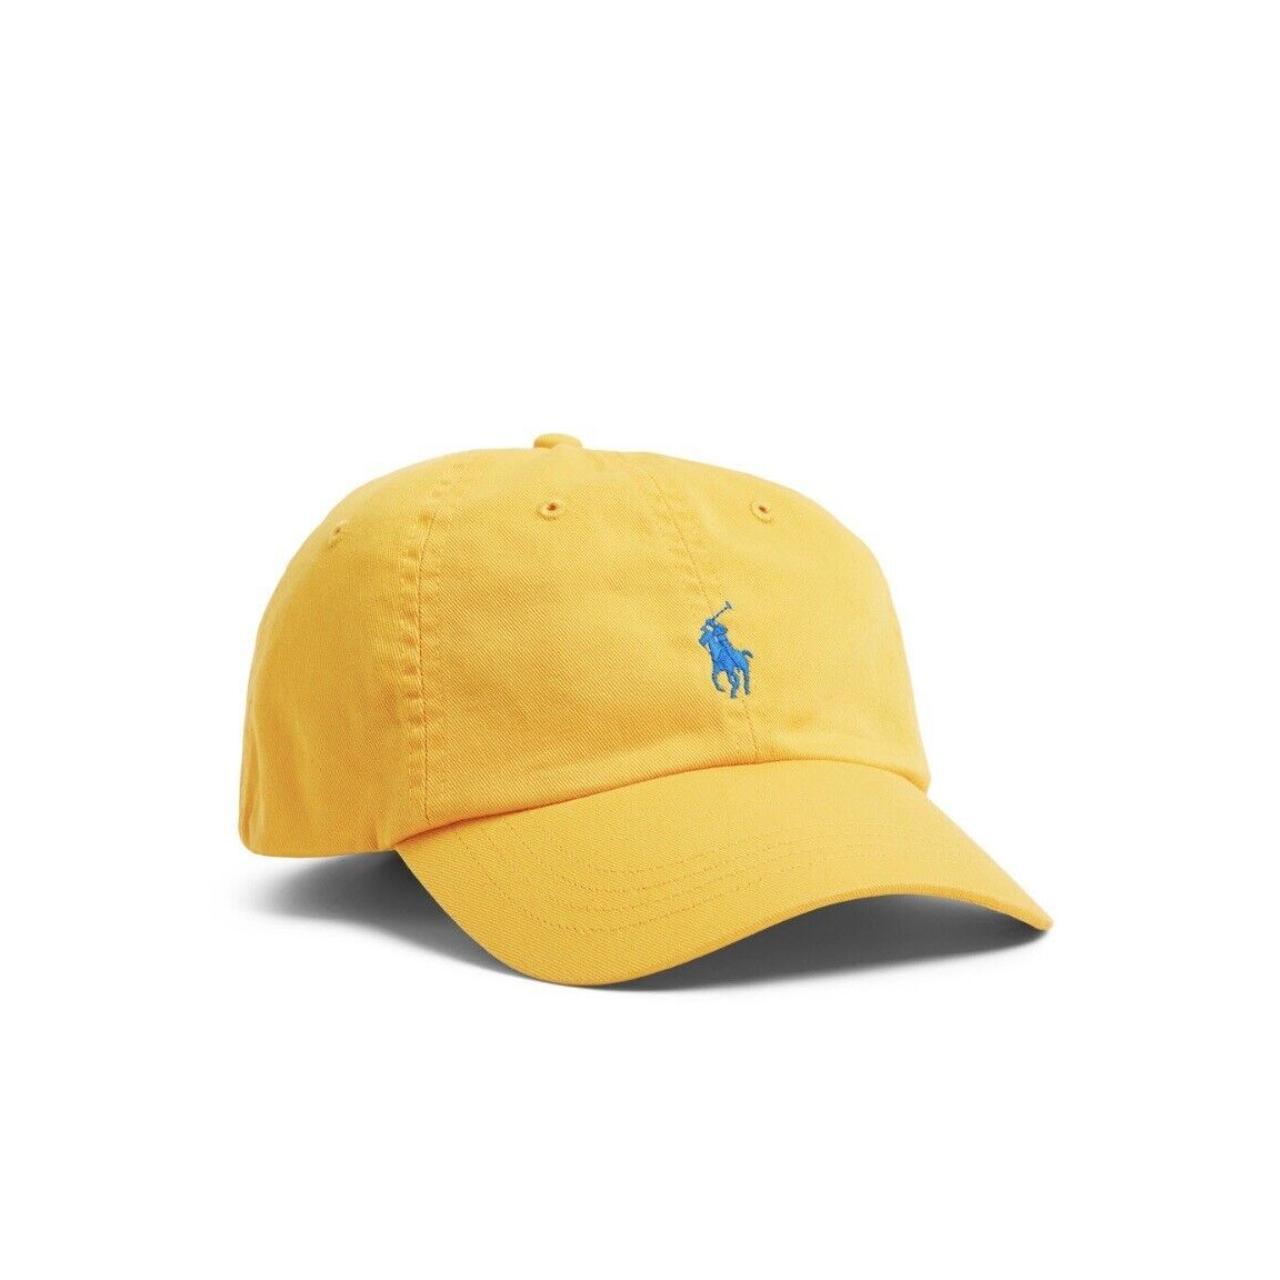 Reversible Polo Ralph Lauren bucket hat - Depop